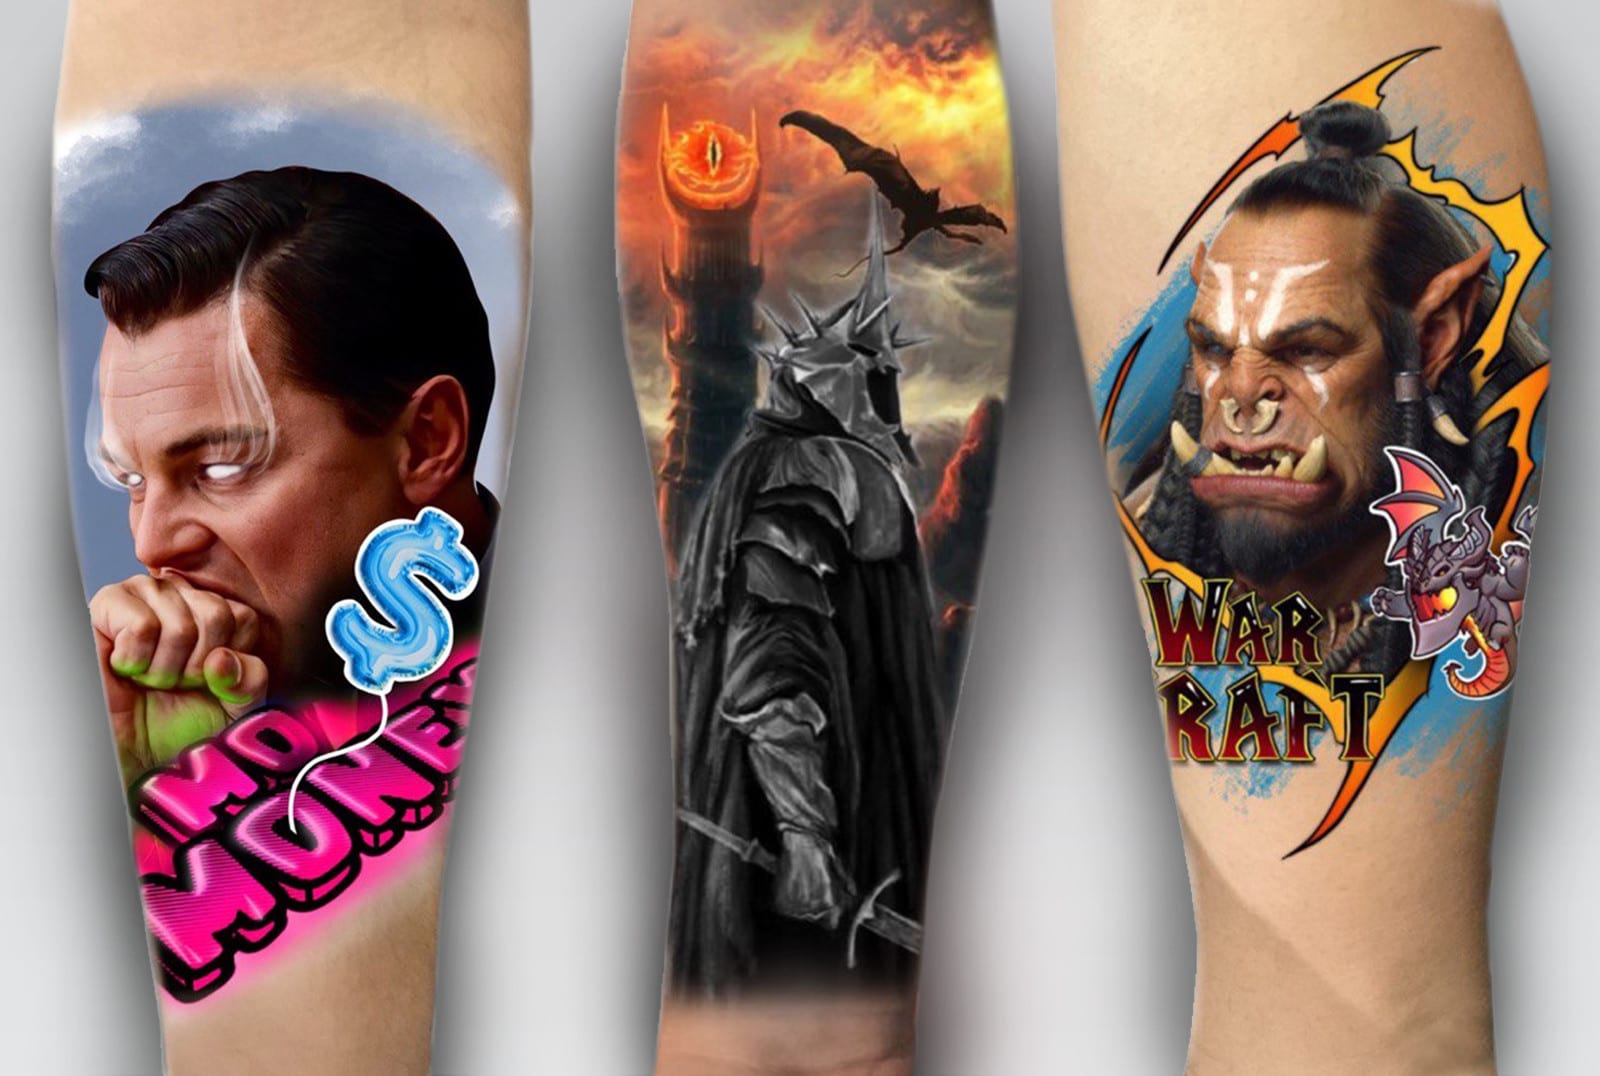 Stunning realistic tattoos by Jordan Croke  iNKPPL  Portrait tattoo Colored  tattoo design Colour tattoo